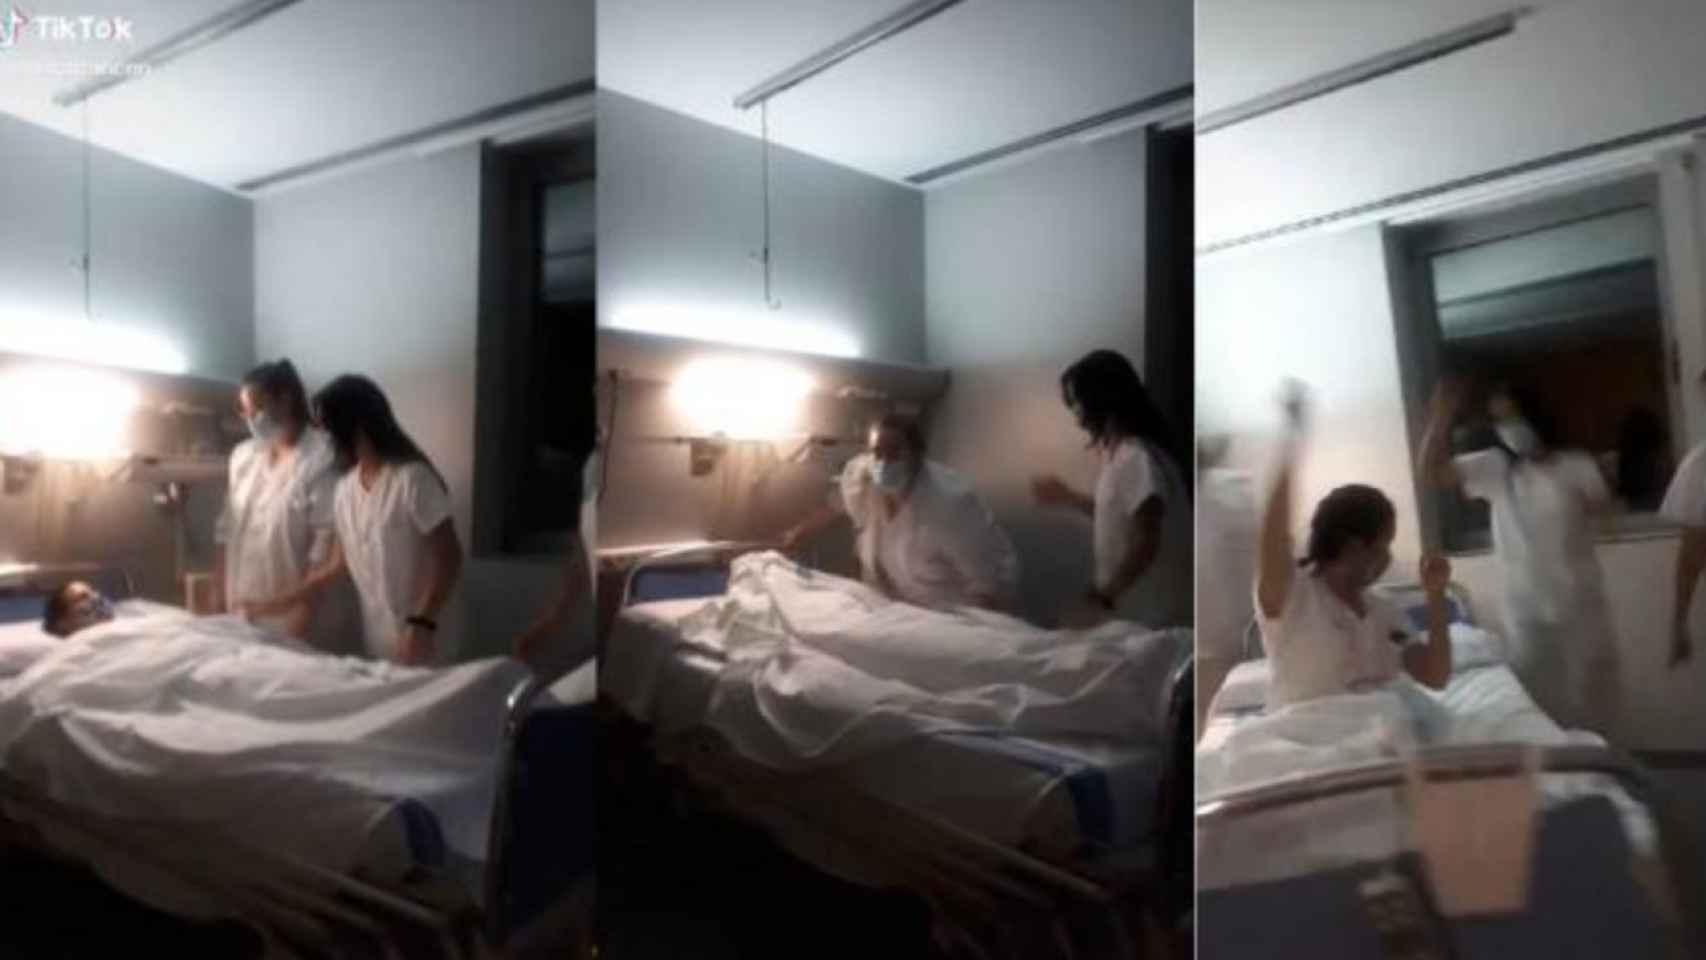 Fragmentos del vídeo donde trabajadoras del Hospital de Tarragona se burlarían de los muertos / TIKTOK